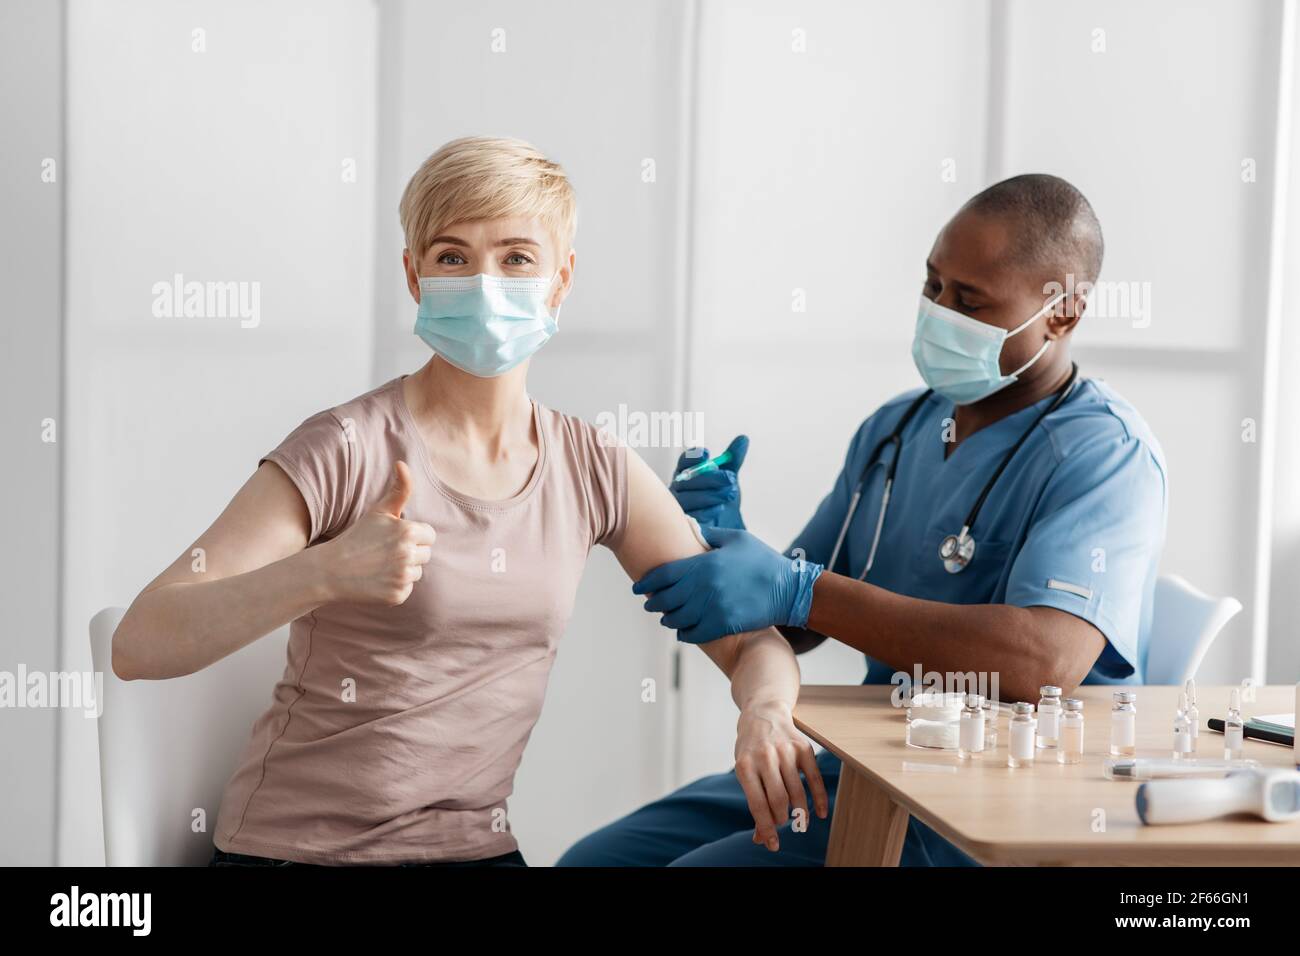 Medico in maschera protettiva iniettare il vaccino per stimolare l'immunità di paziente donna a rischio di coronavirus Foto Stock